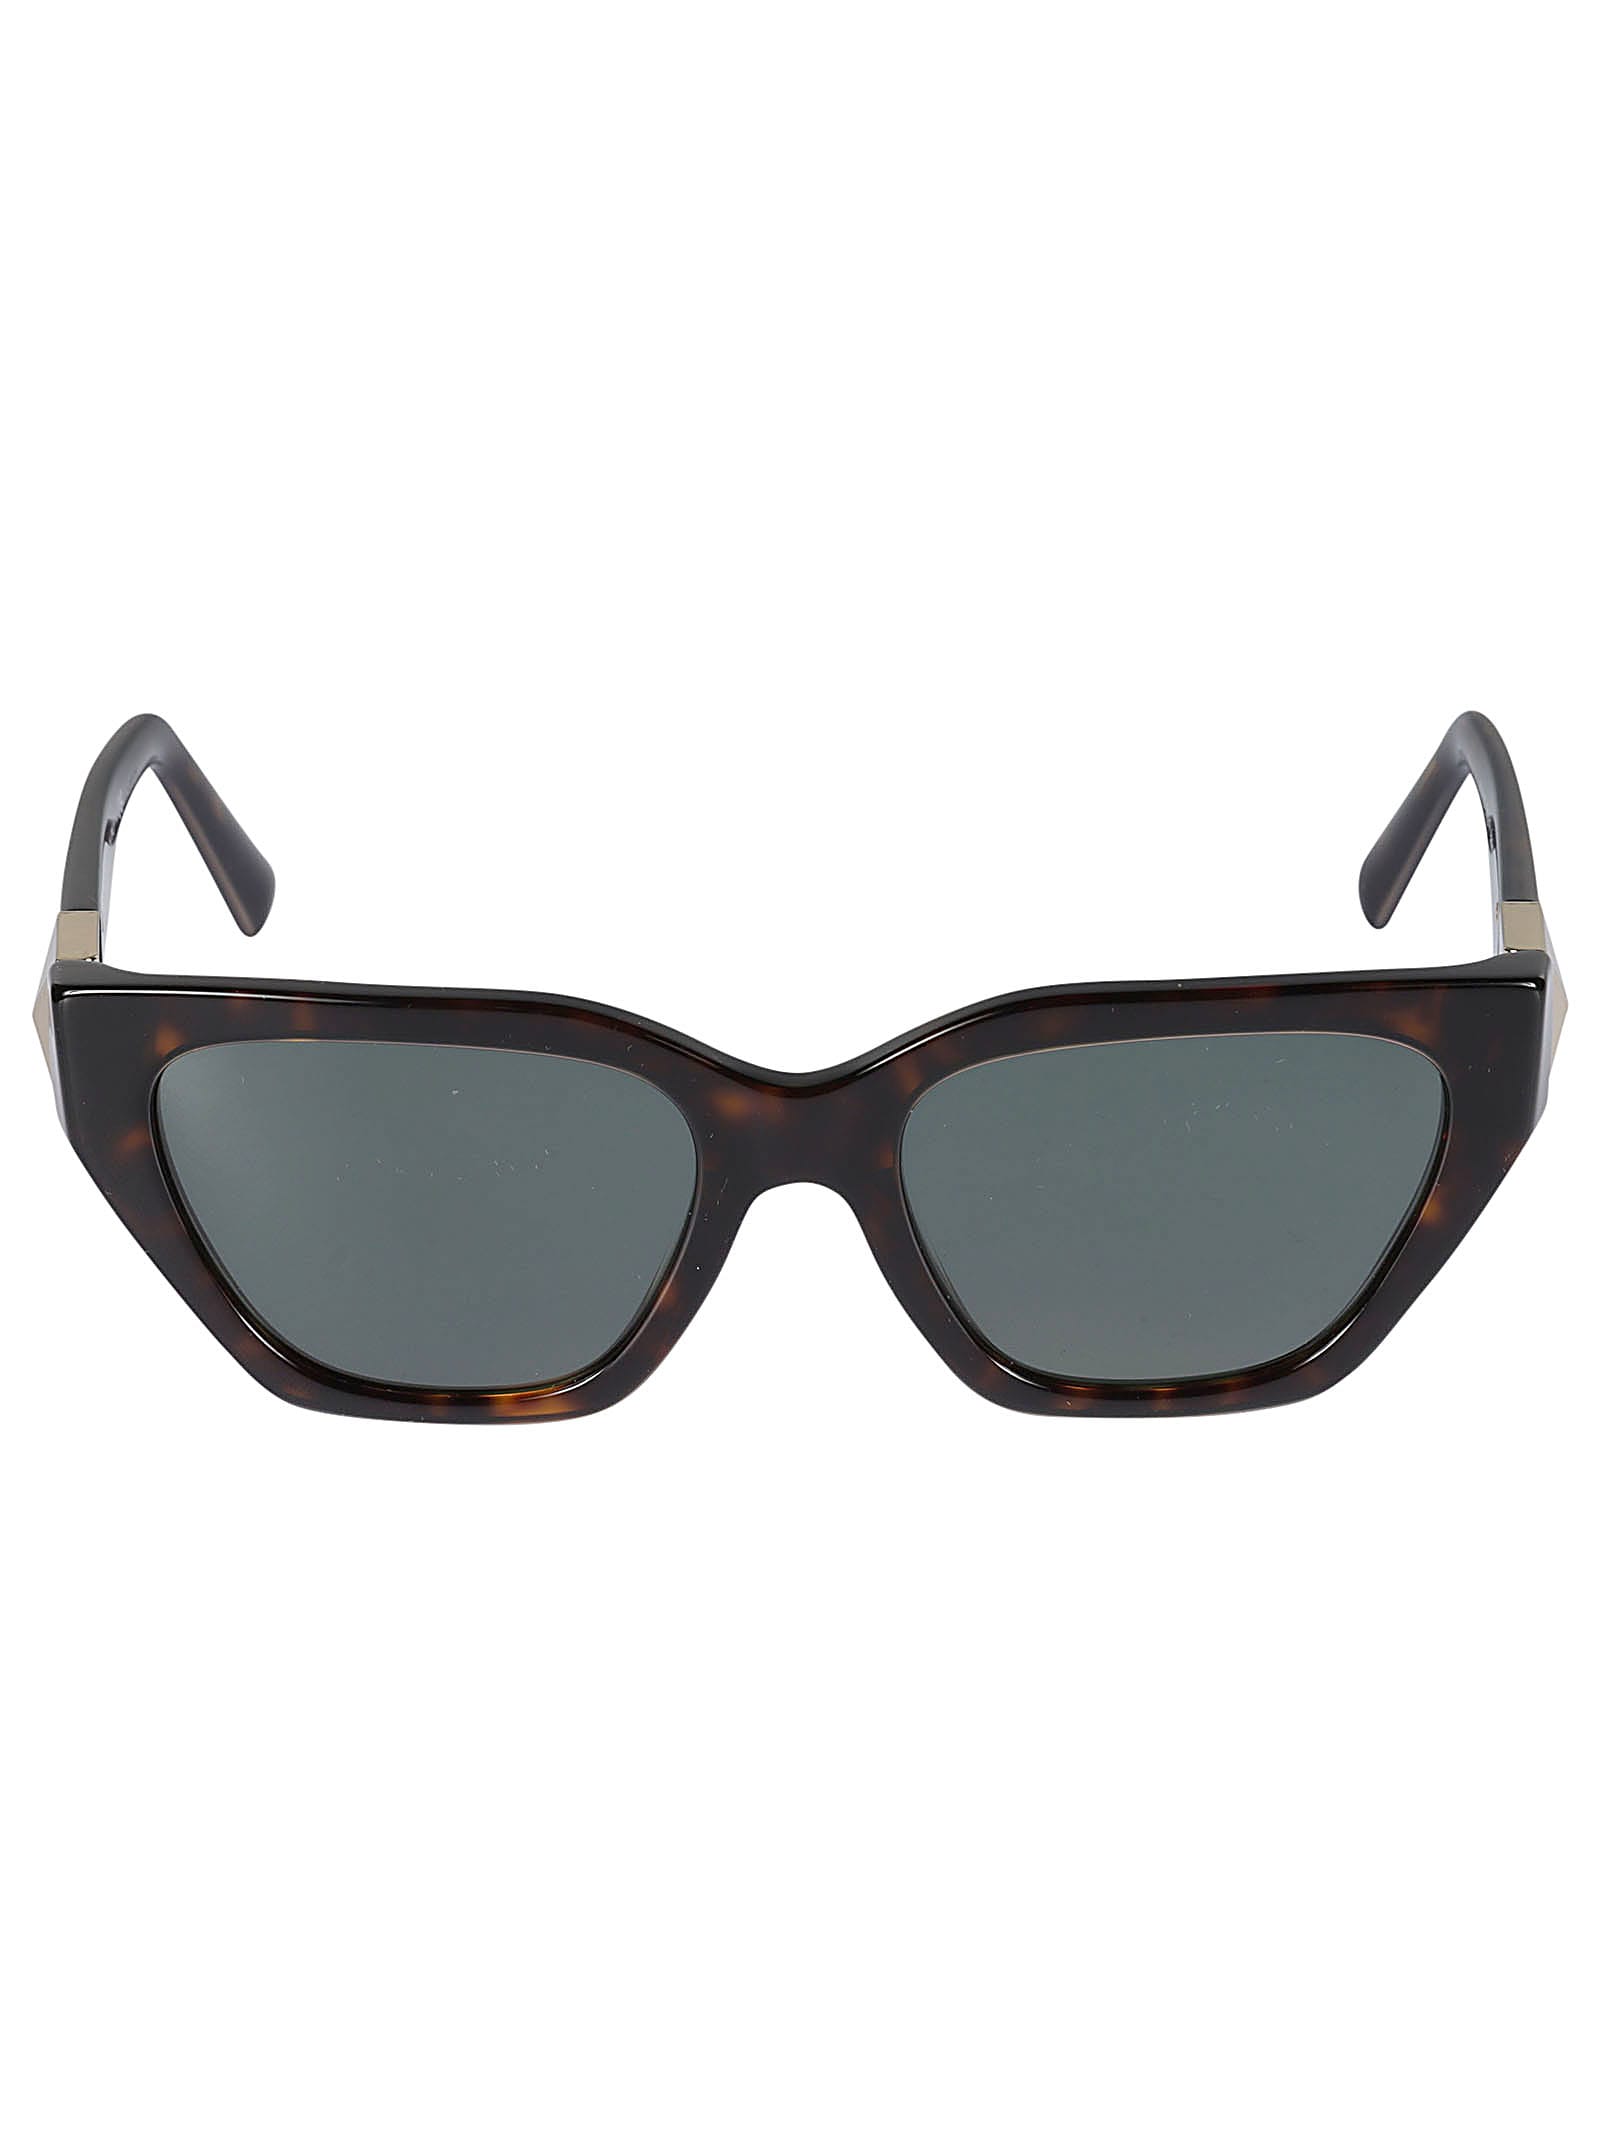 Valentino Sole500271 Sunglasses